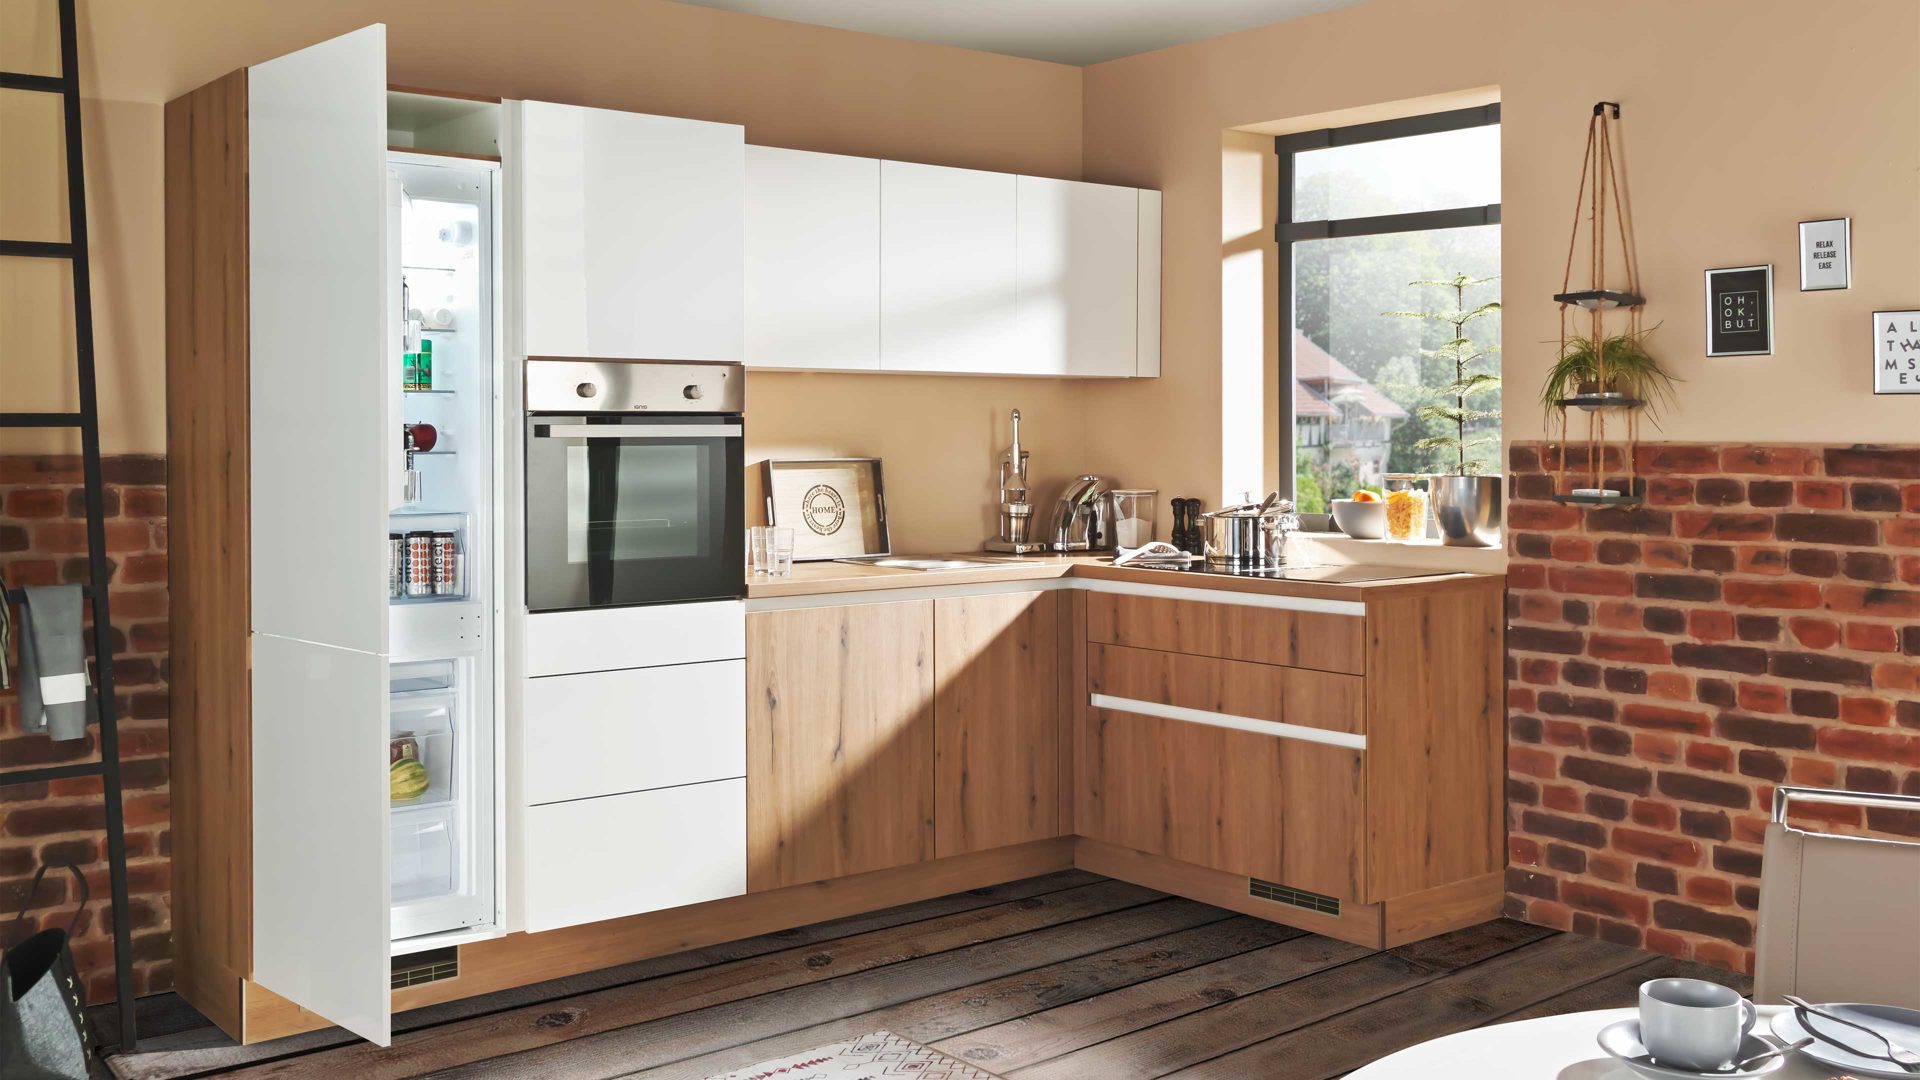 Einbauküche Express küchen aus Holz in Weiß EXPRESS KÜCHEN Einbauküche Star mit Einbaugeräten Weiß & Eiche astig - Stellfläche ca. 293 x 160 cm